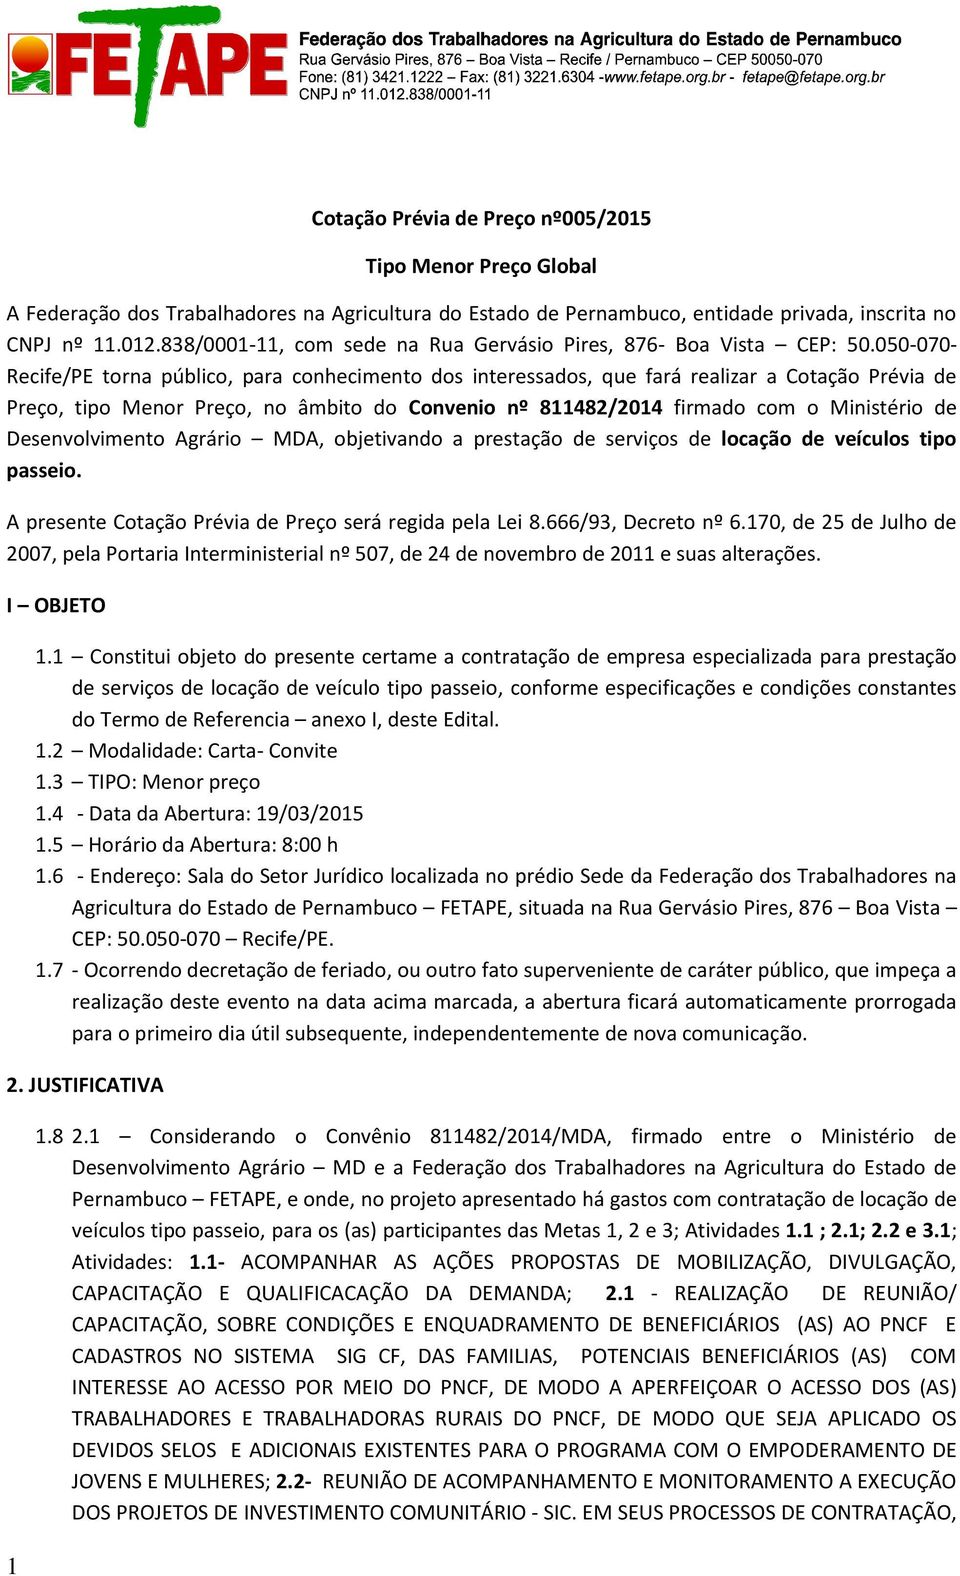 050-070- Recife/PE torna público, para conhecimento dos interessados, que fará realizar a Cotação Prévia de Preço, tipo Menor Preço, no âmbito do Convenio nº 811482/2014 firmado com o Ministério de